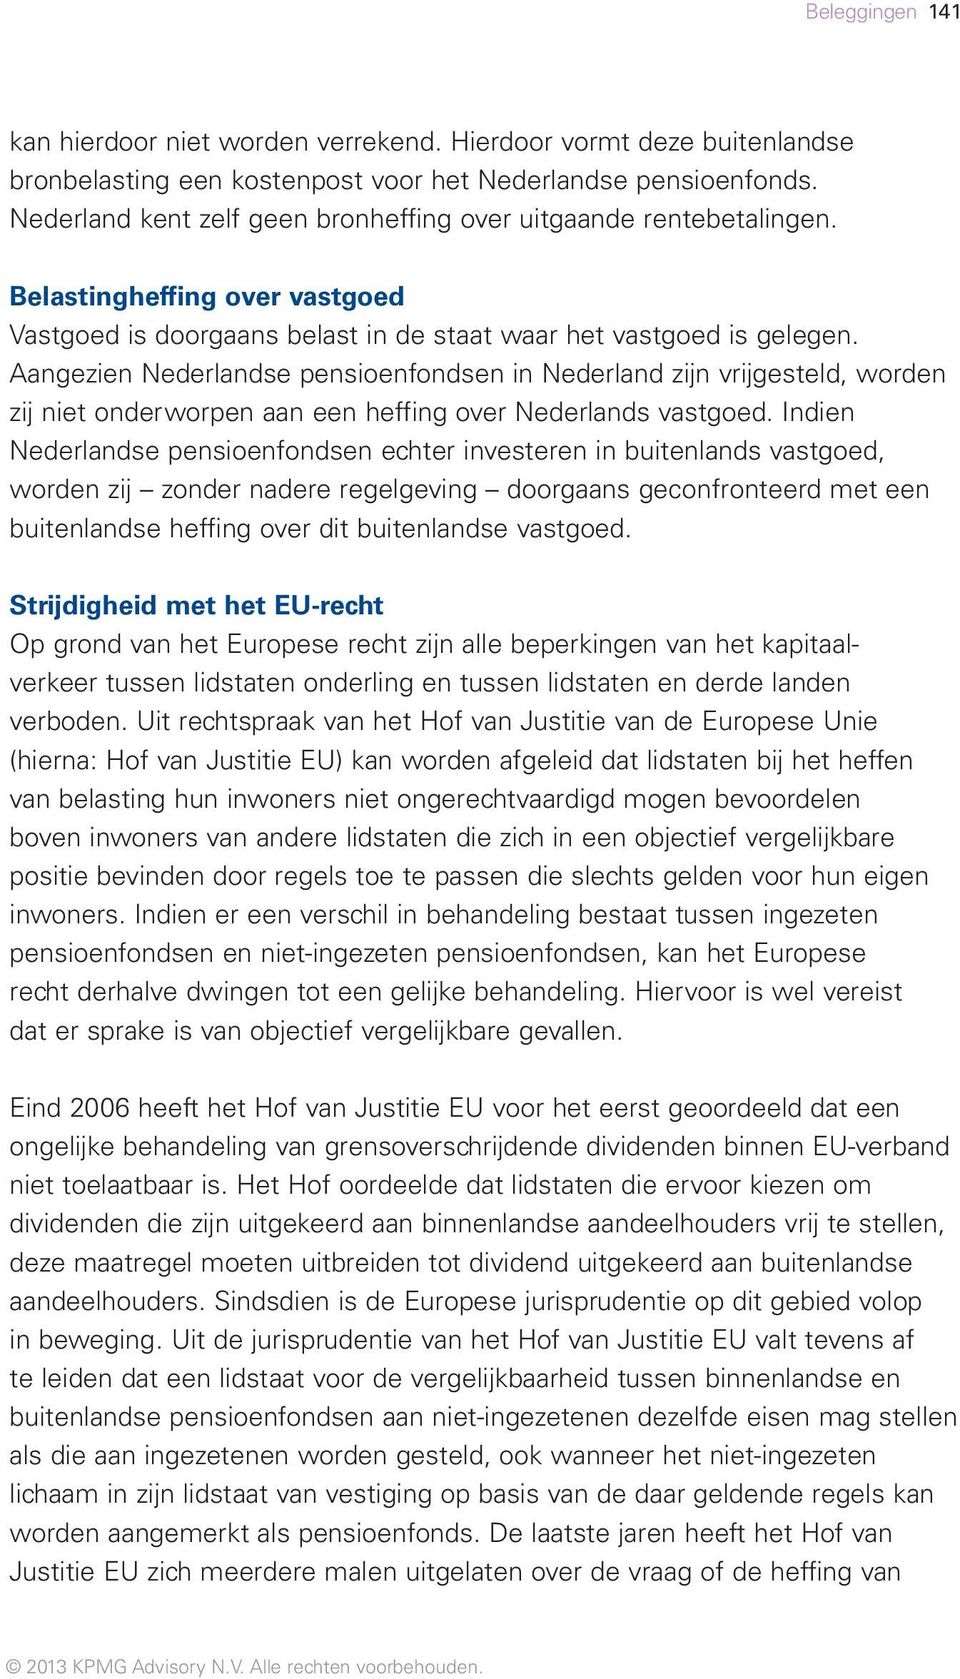 Aangezien Nederlandse pensioenfondsen in Nederland zijn vrijgesteld, worden zij niet onderworpen aan een heffing over Nederlands vastgoed.